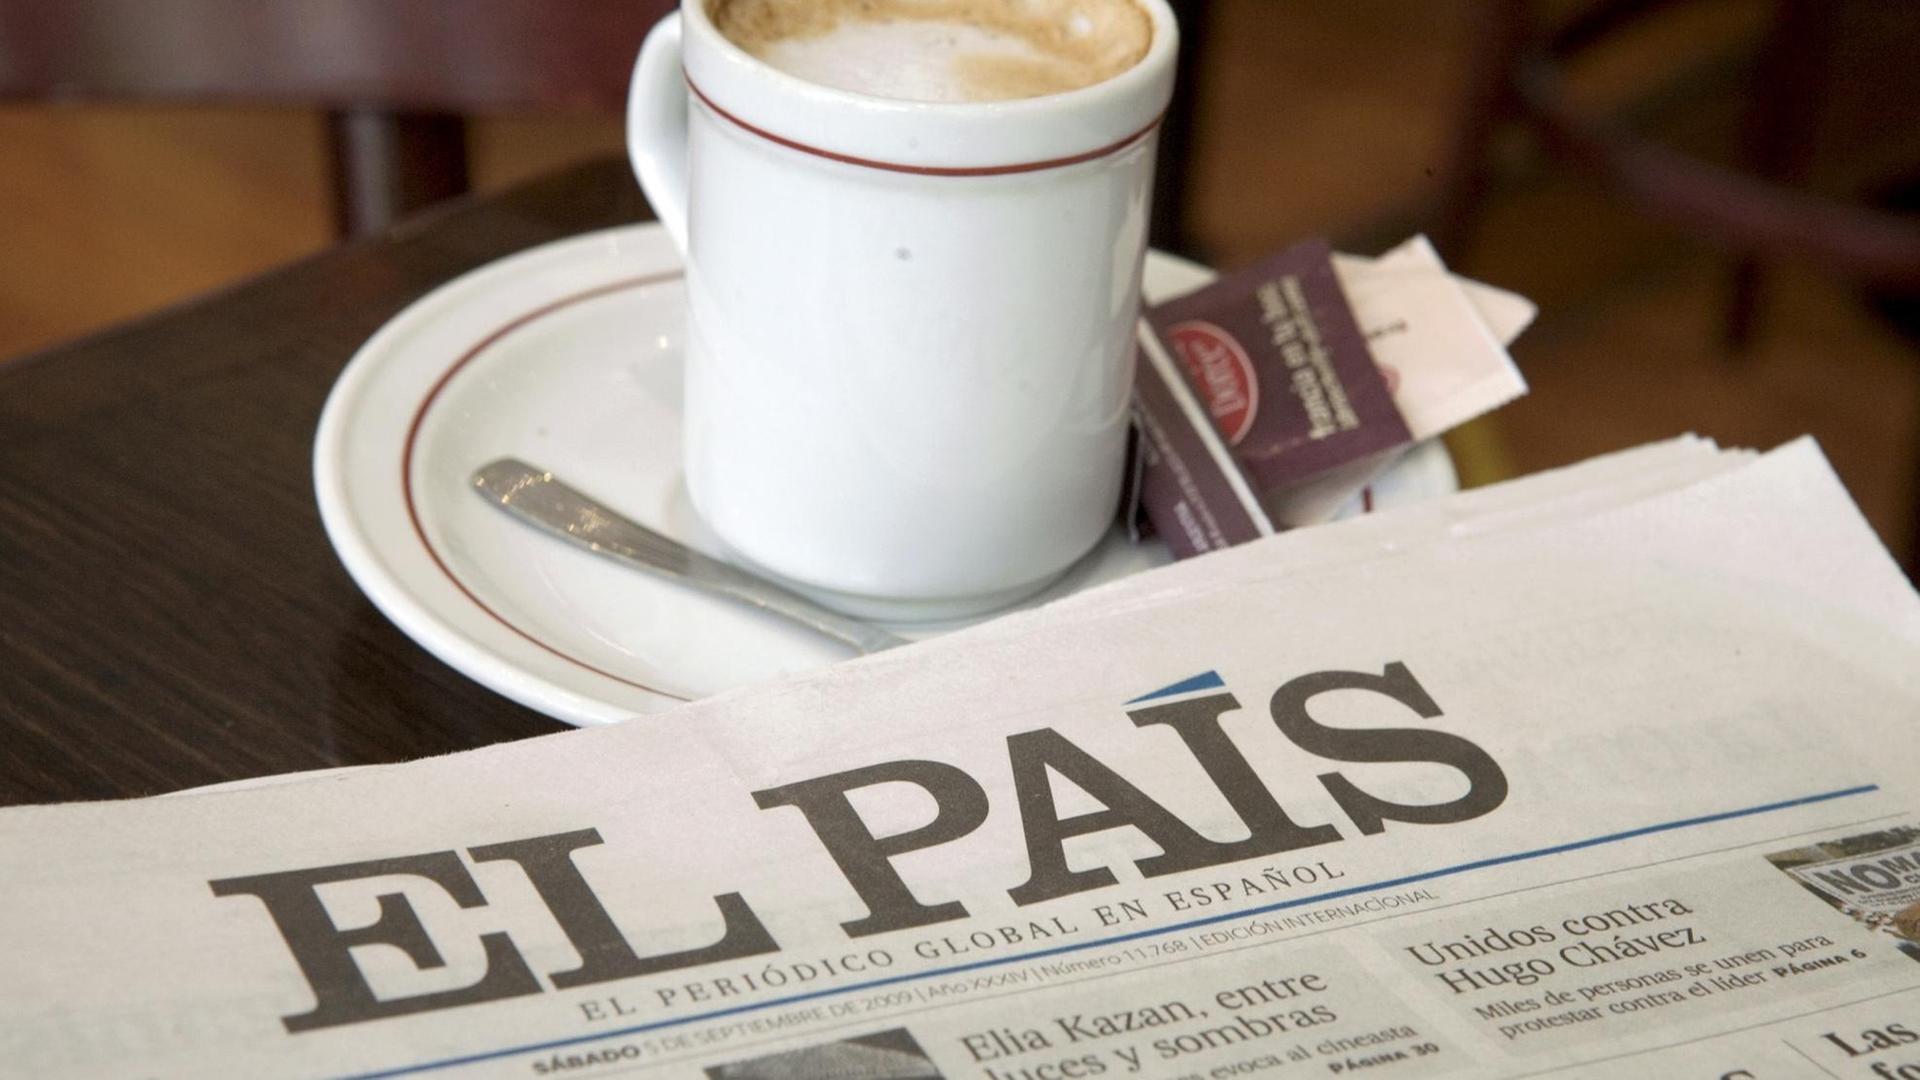 Die Titelseite einer Ausgabe der "El Pais" neben einer Tasse Milchkaffee